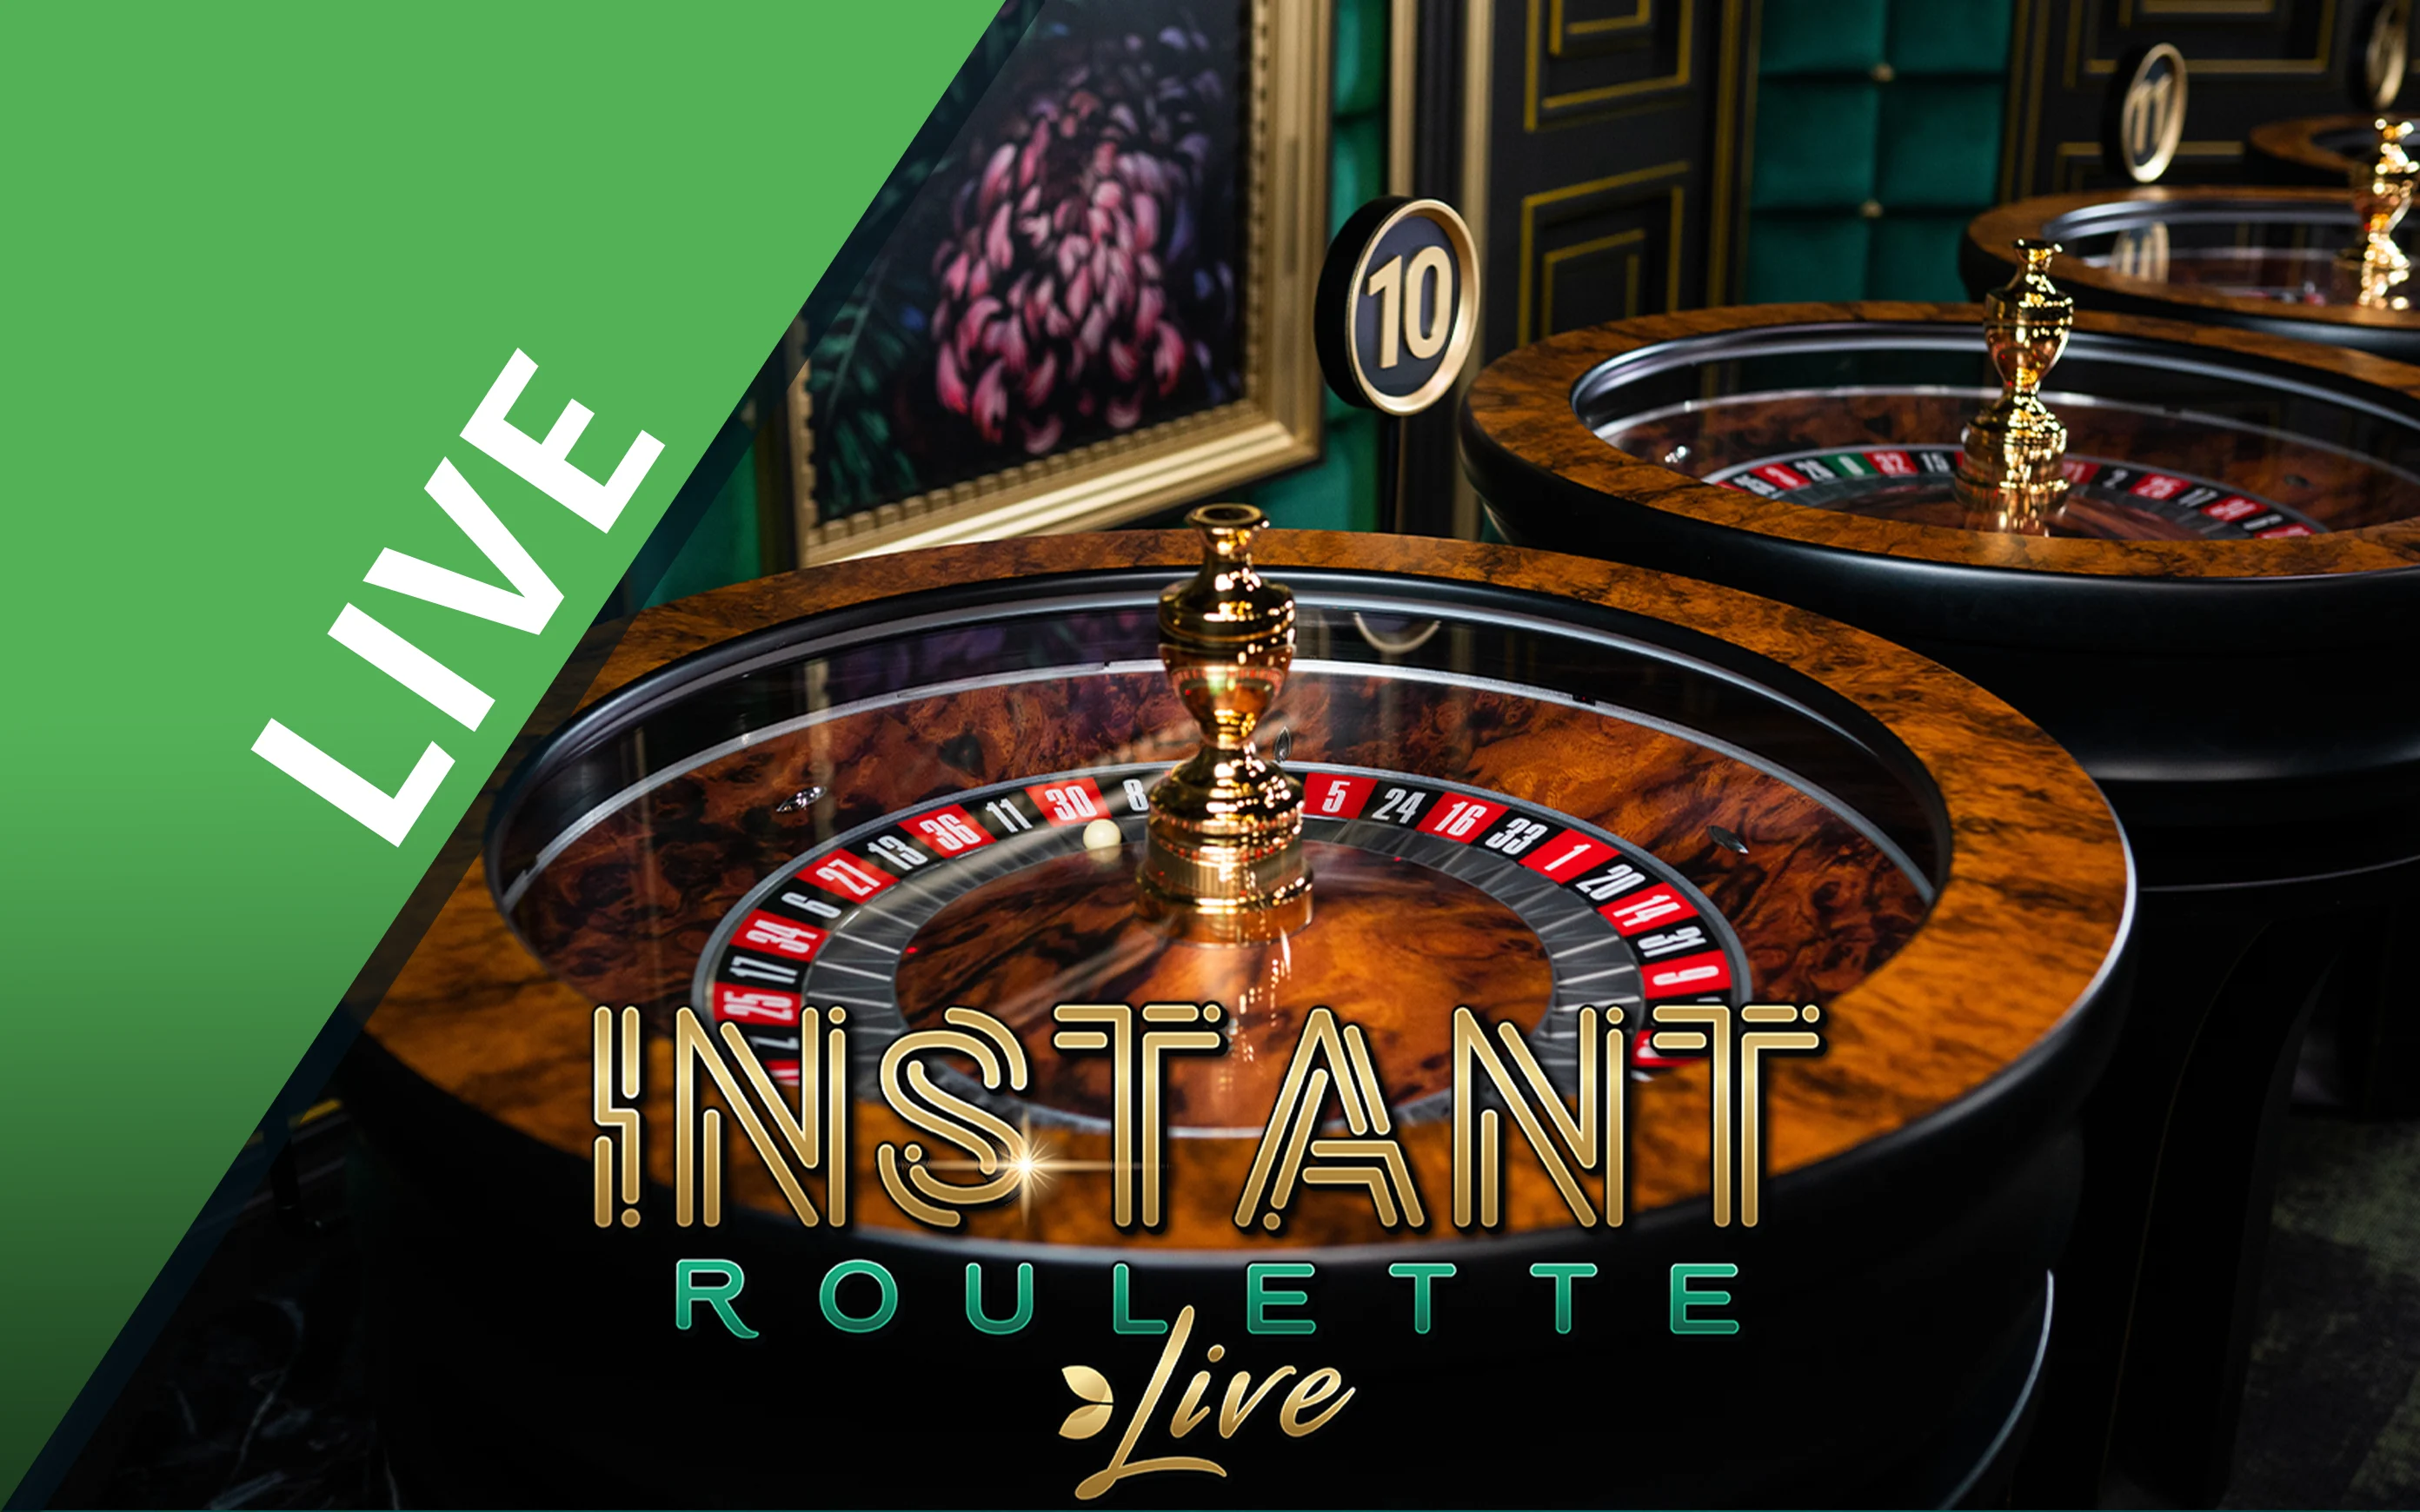 Luaj Instant Roulette në kazino Starcasino.be në internet